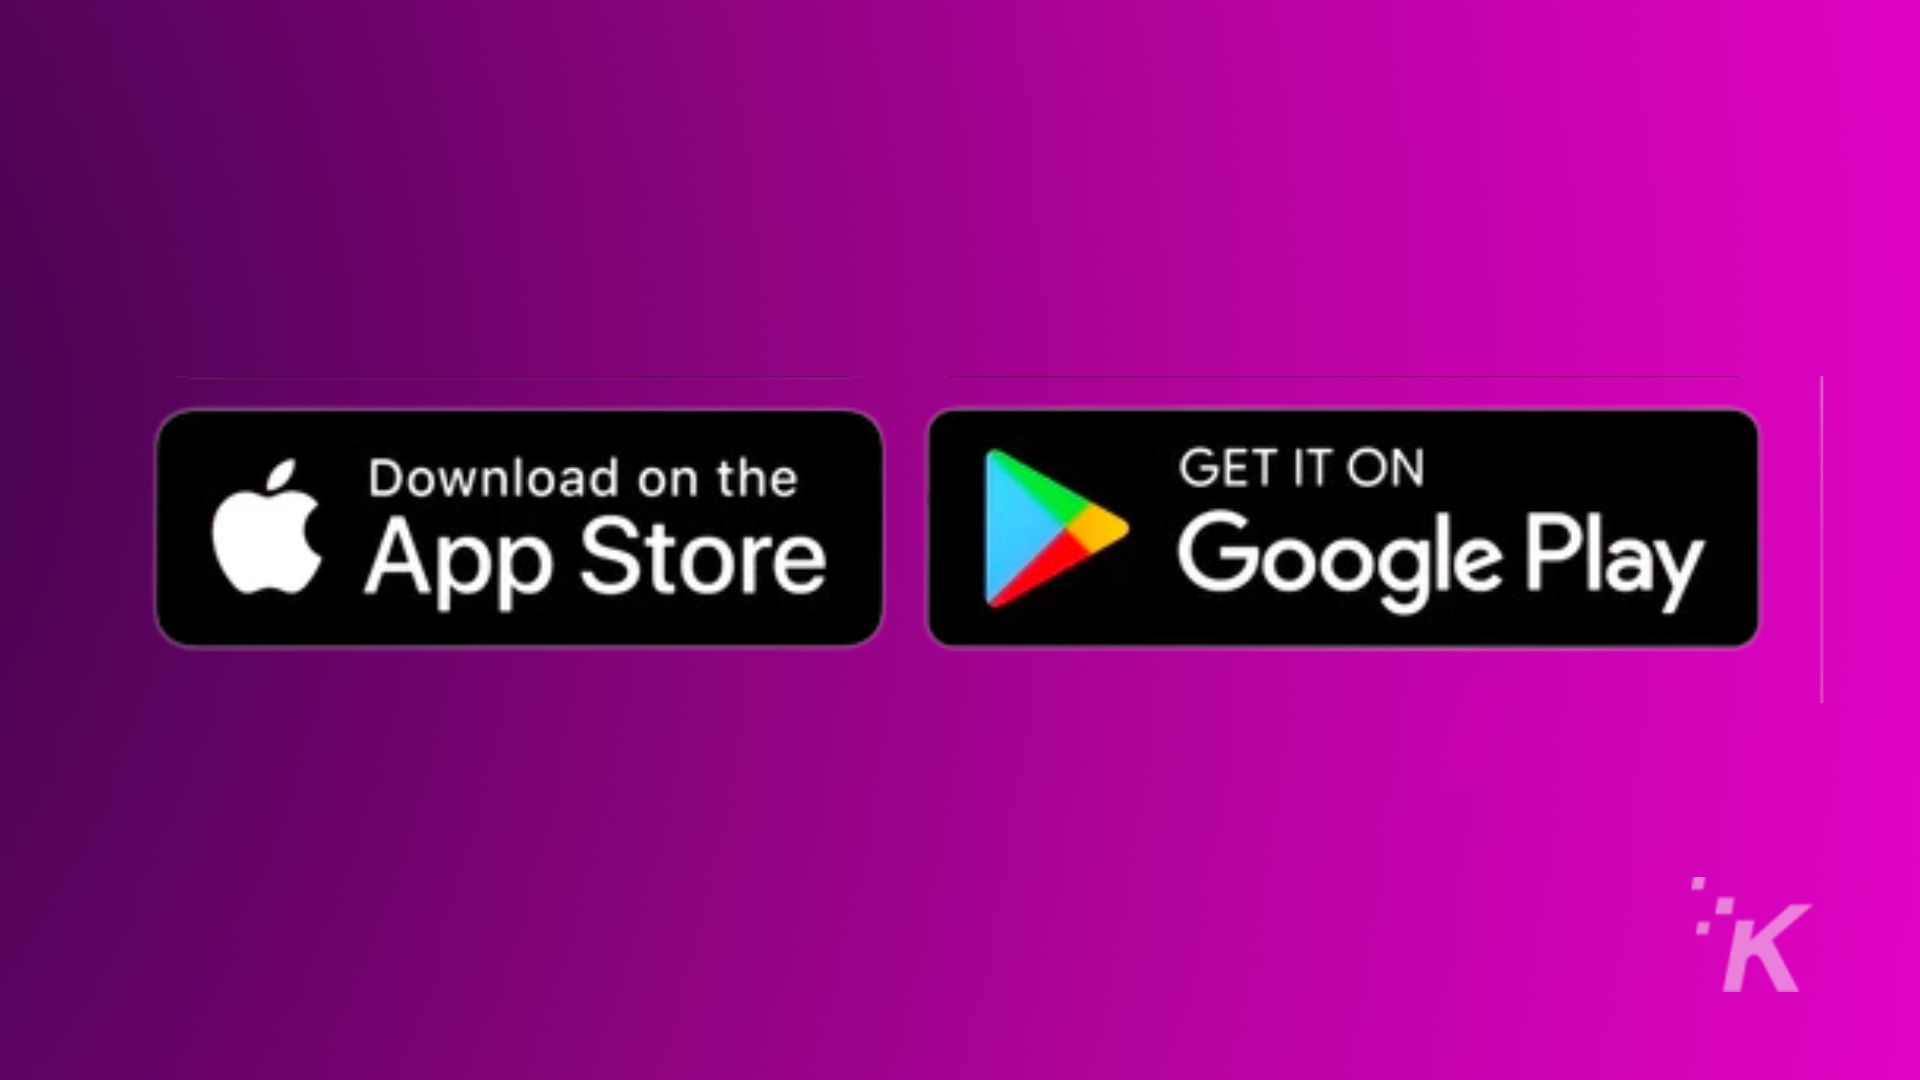 Imaginea promovează disponibilitatea unui produs pe App Store și Google Play. Text complet: Descărcați din GET IT ON App Store Google Play IK